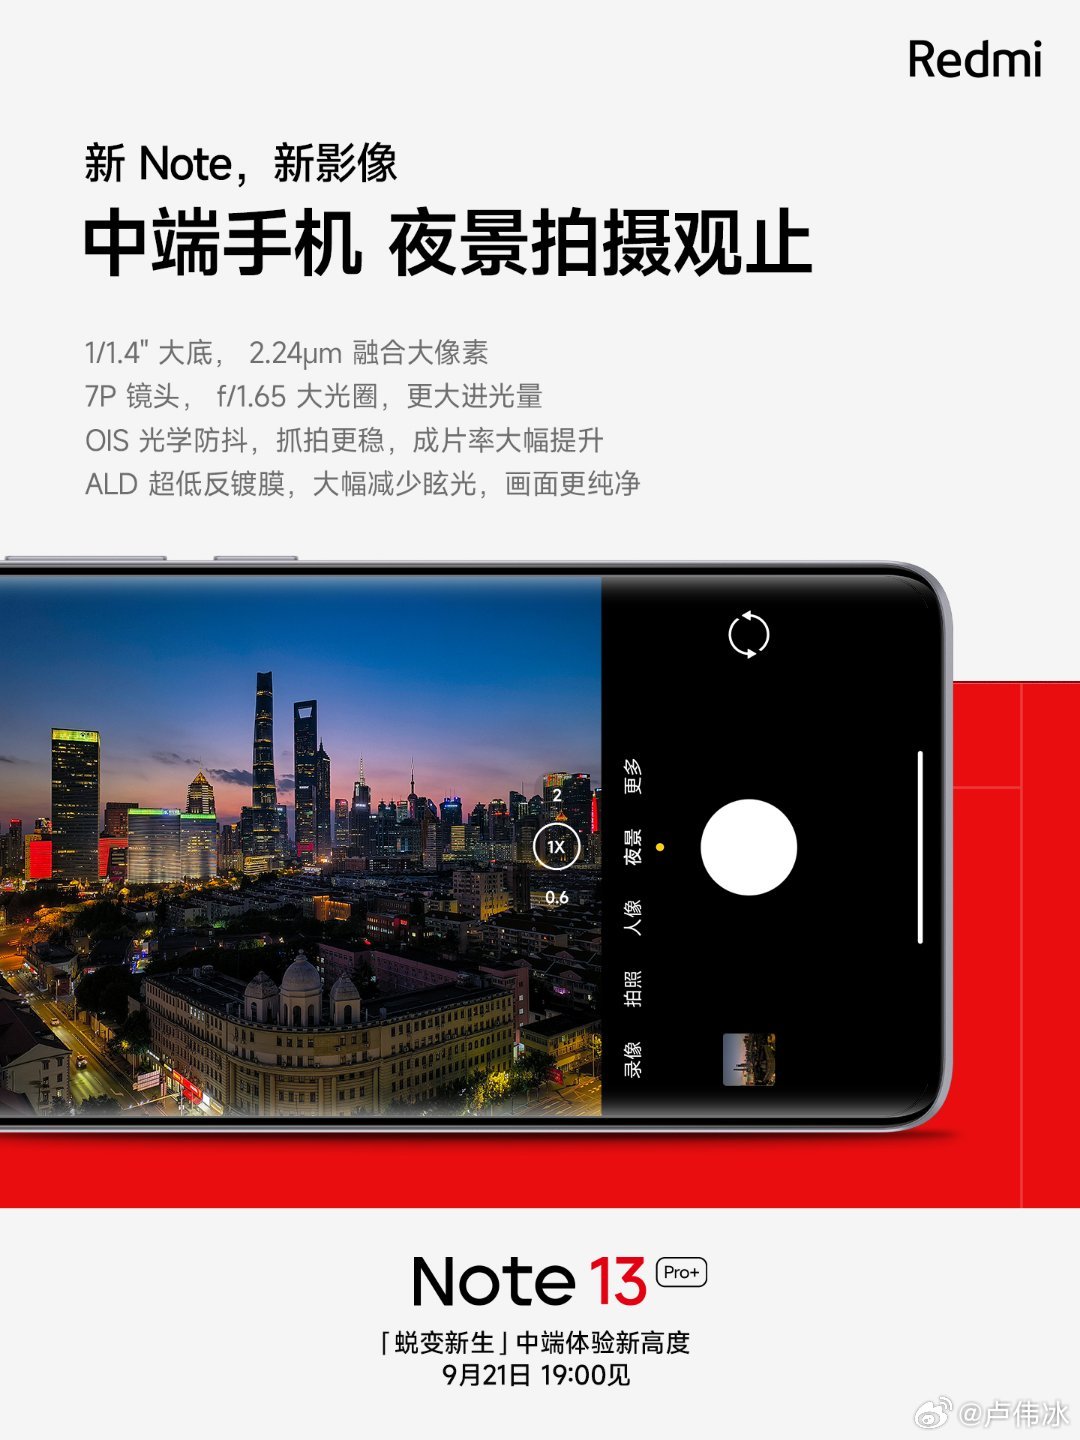 Redmi Note 13 Pro+ получит флагманскую камеру с ночным режимом